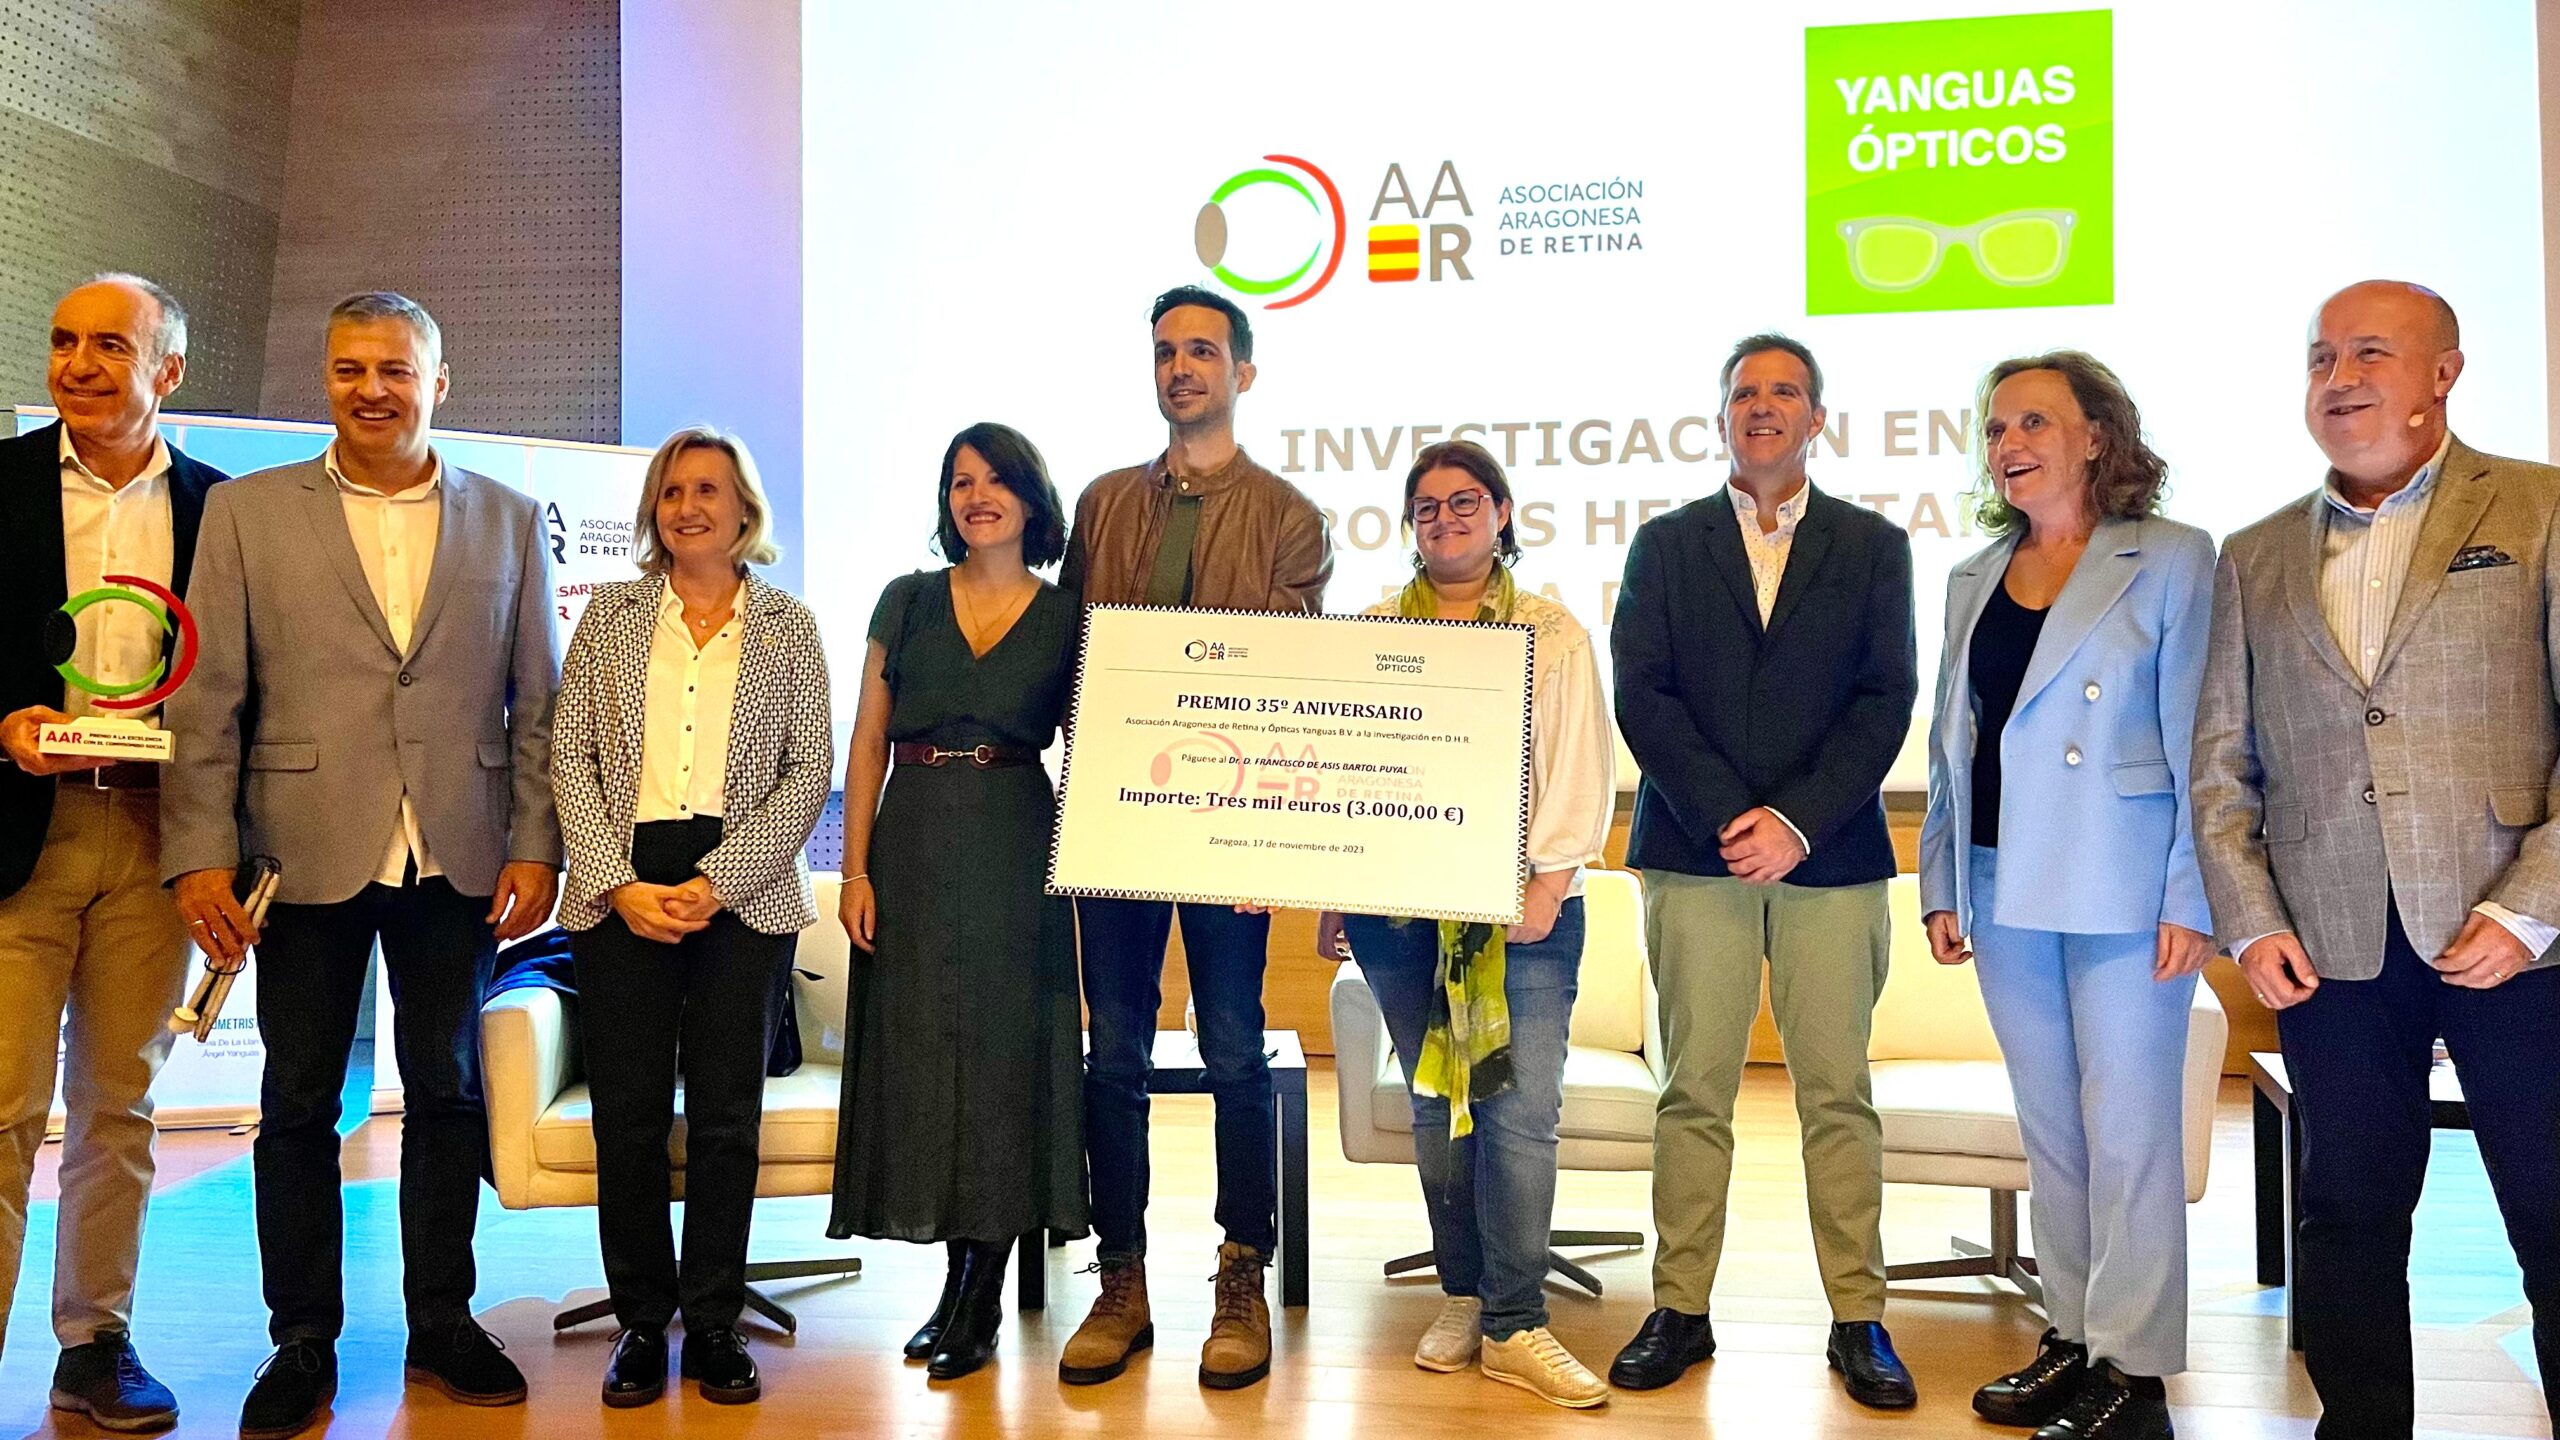 Premio de Investigación 35º aniversario AAR Yaguas Ópticos BV